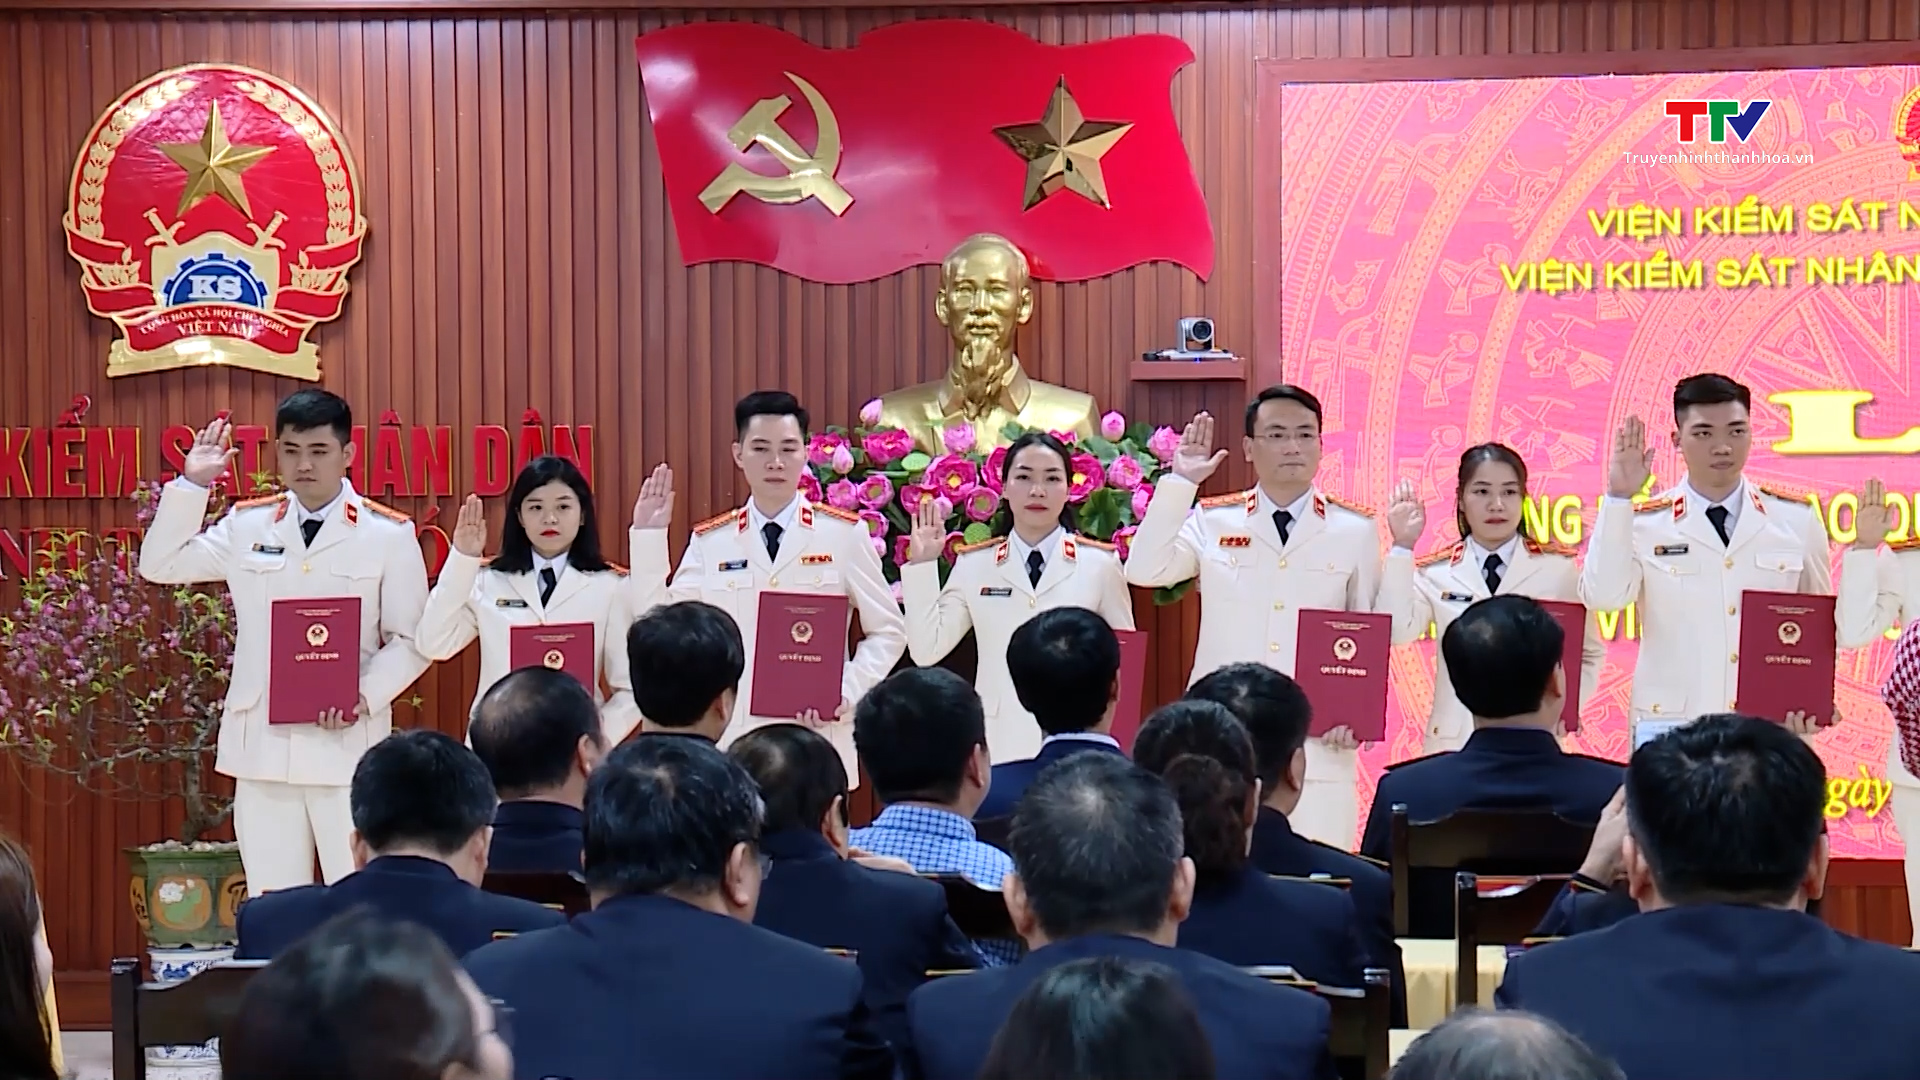 Viện Kiểm sát nhân dân tỉnh Thanh Hoá công bố và trao các quyết định về công tác cán bộ- Ảnh 3.